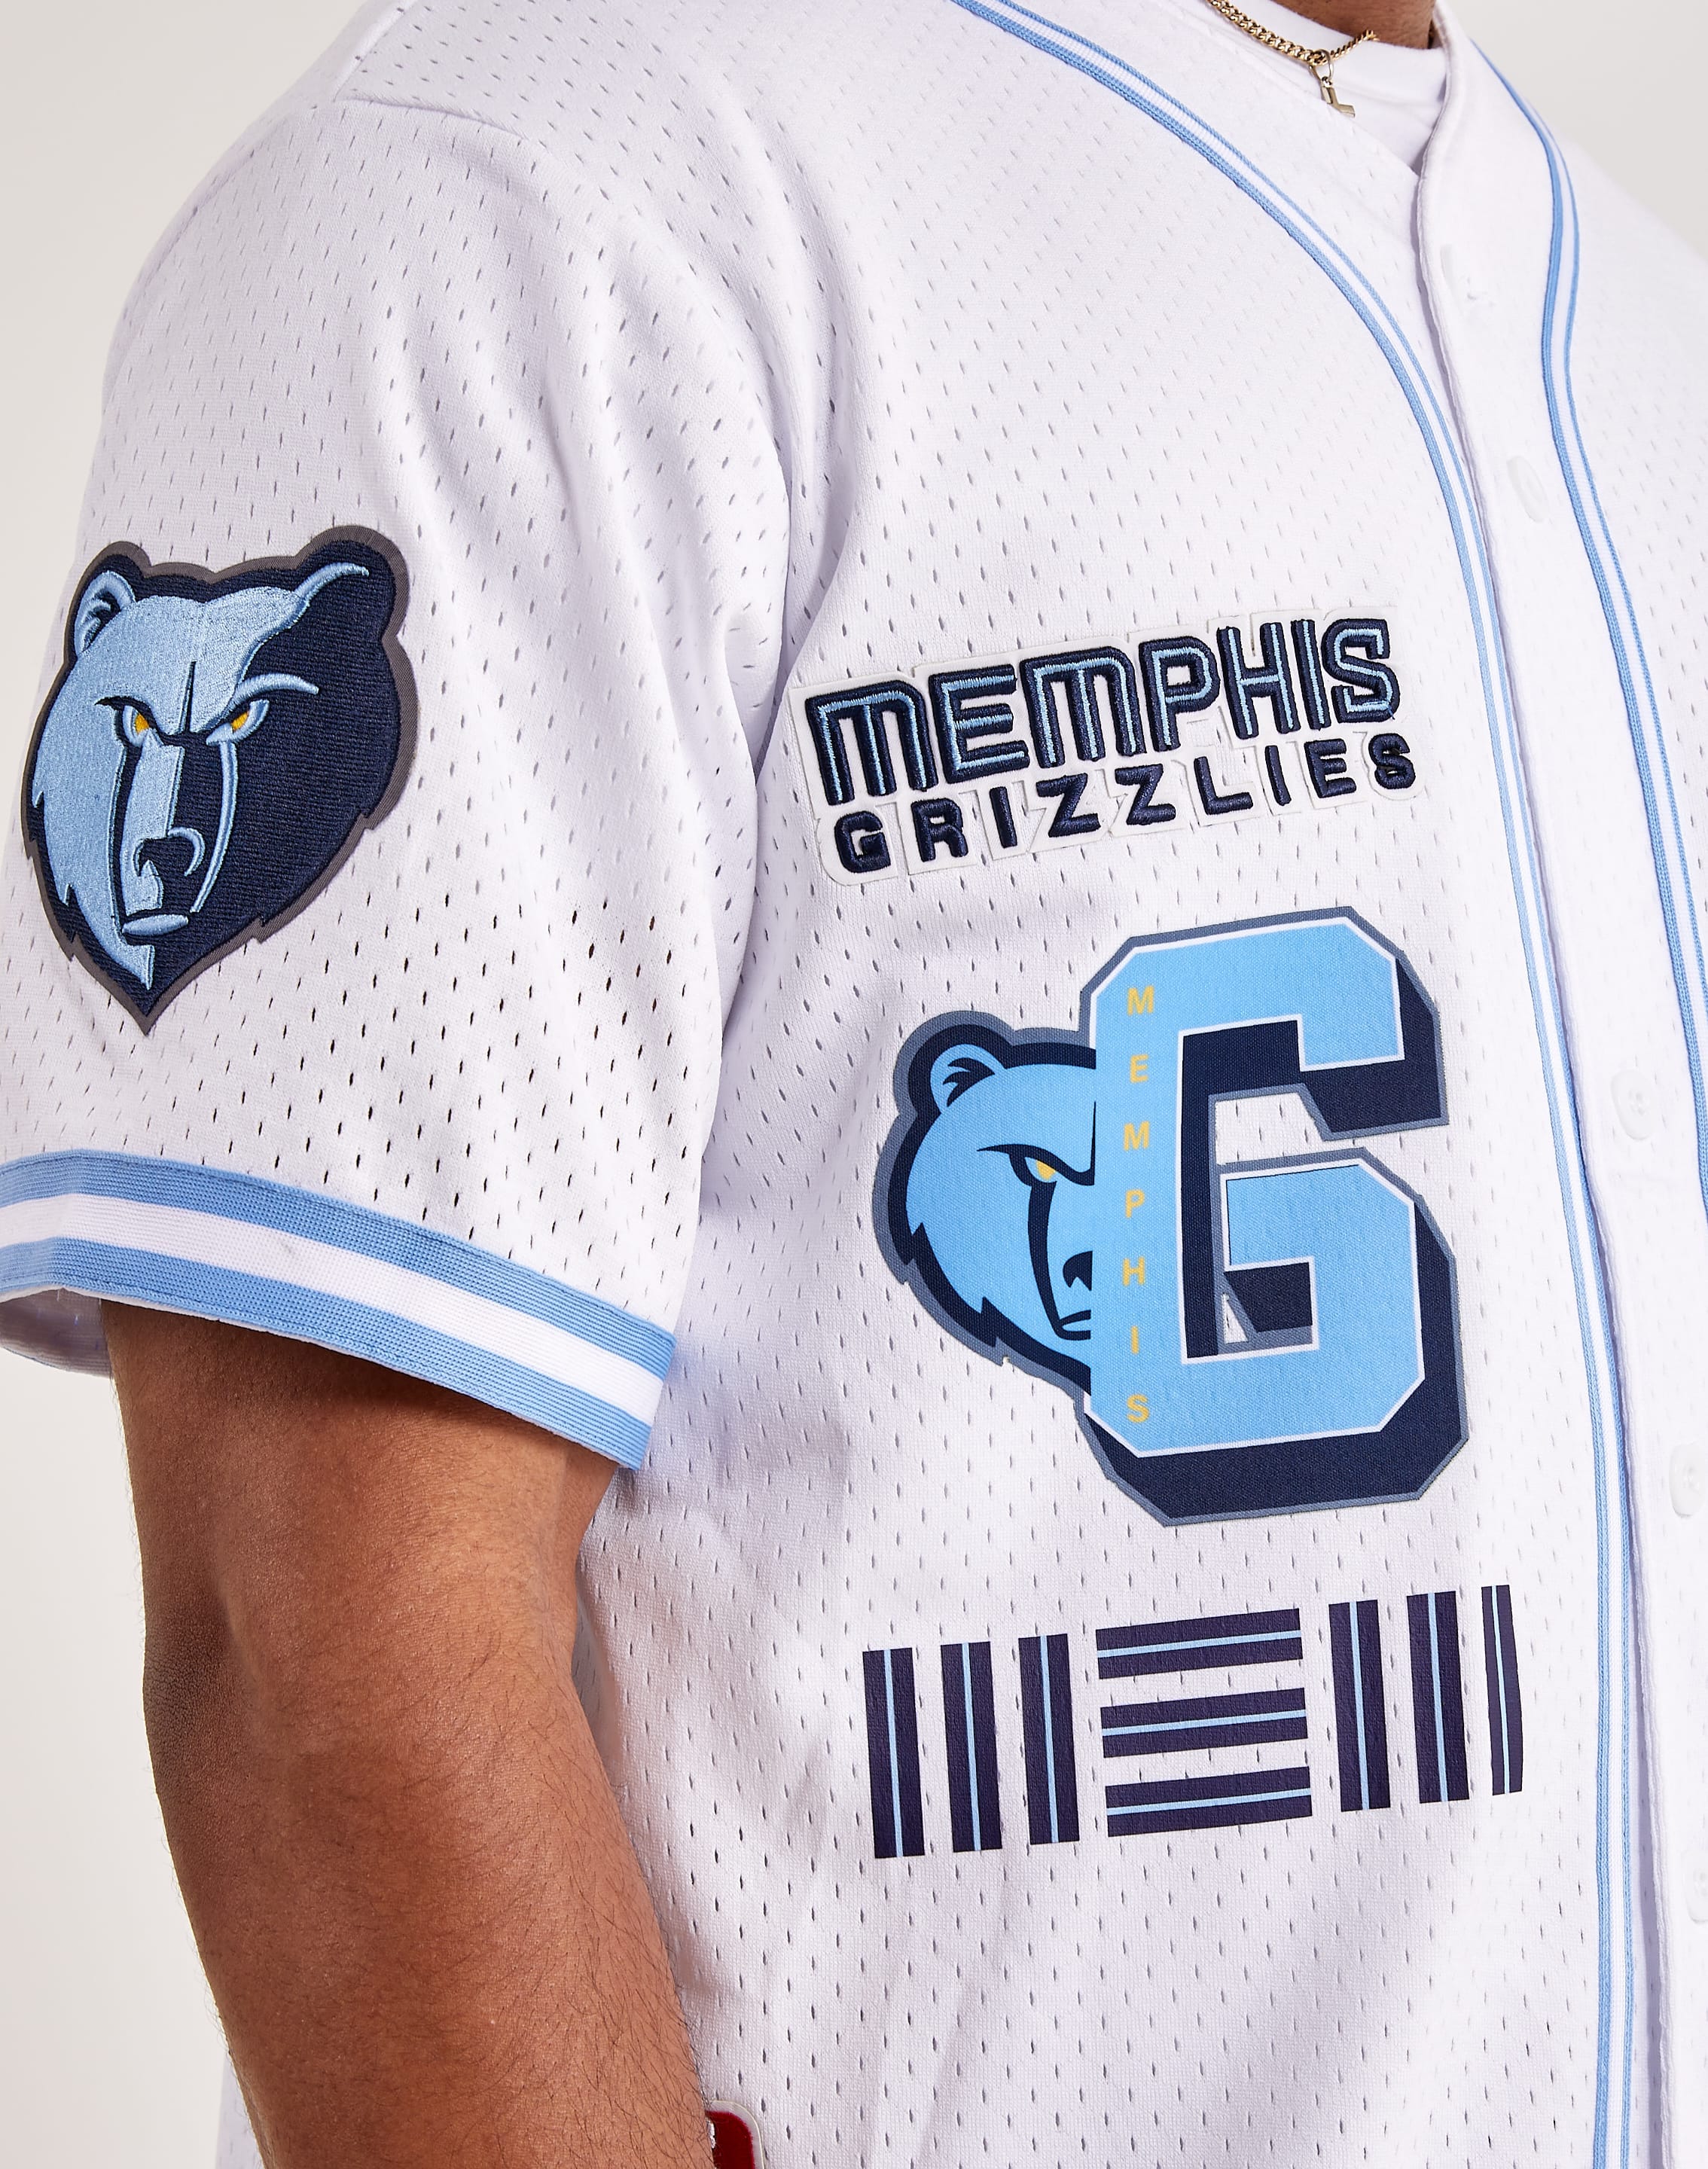 Memphis Grizzlies Road Uniform  Nba outfit, Memphis grizzlies, Memphis  grizzlies jersey